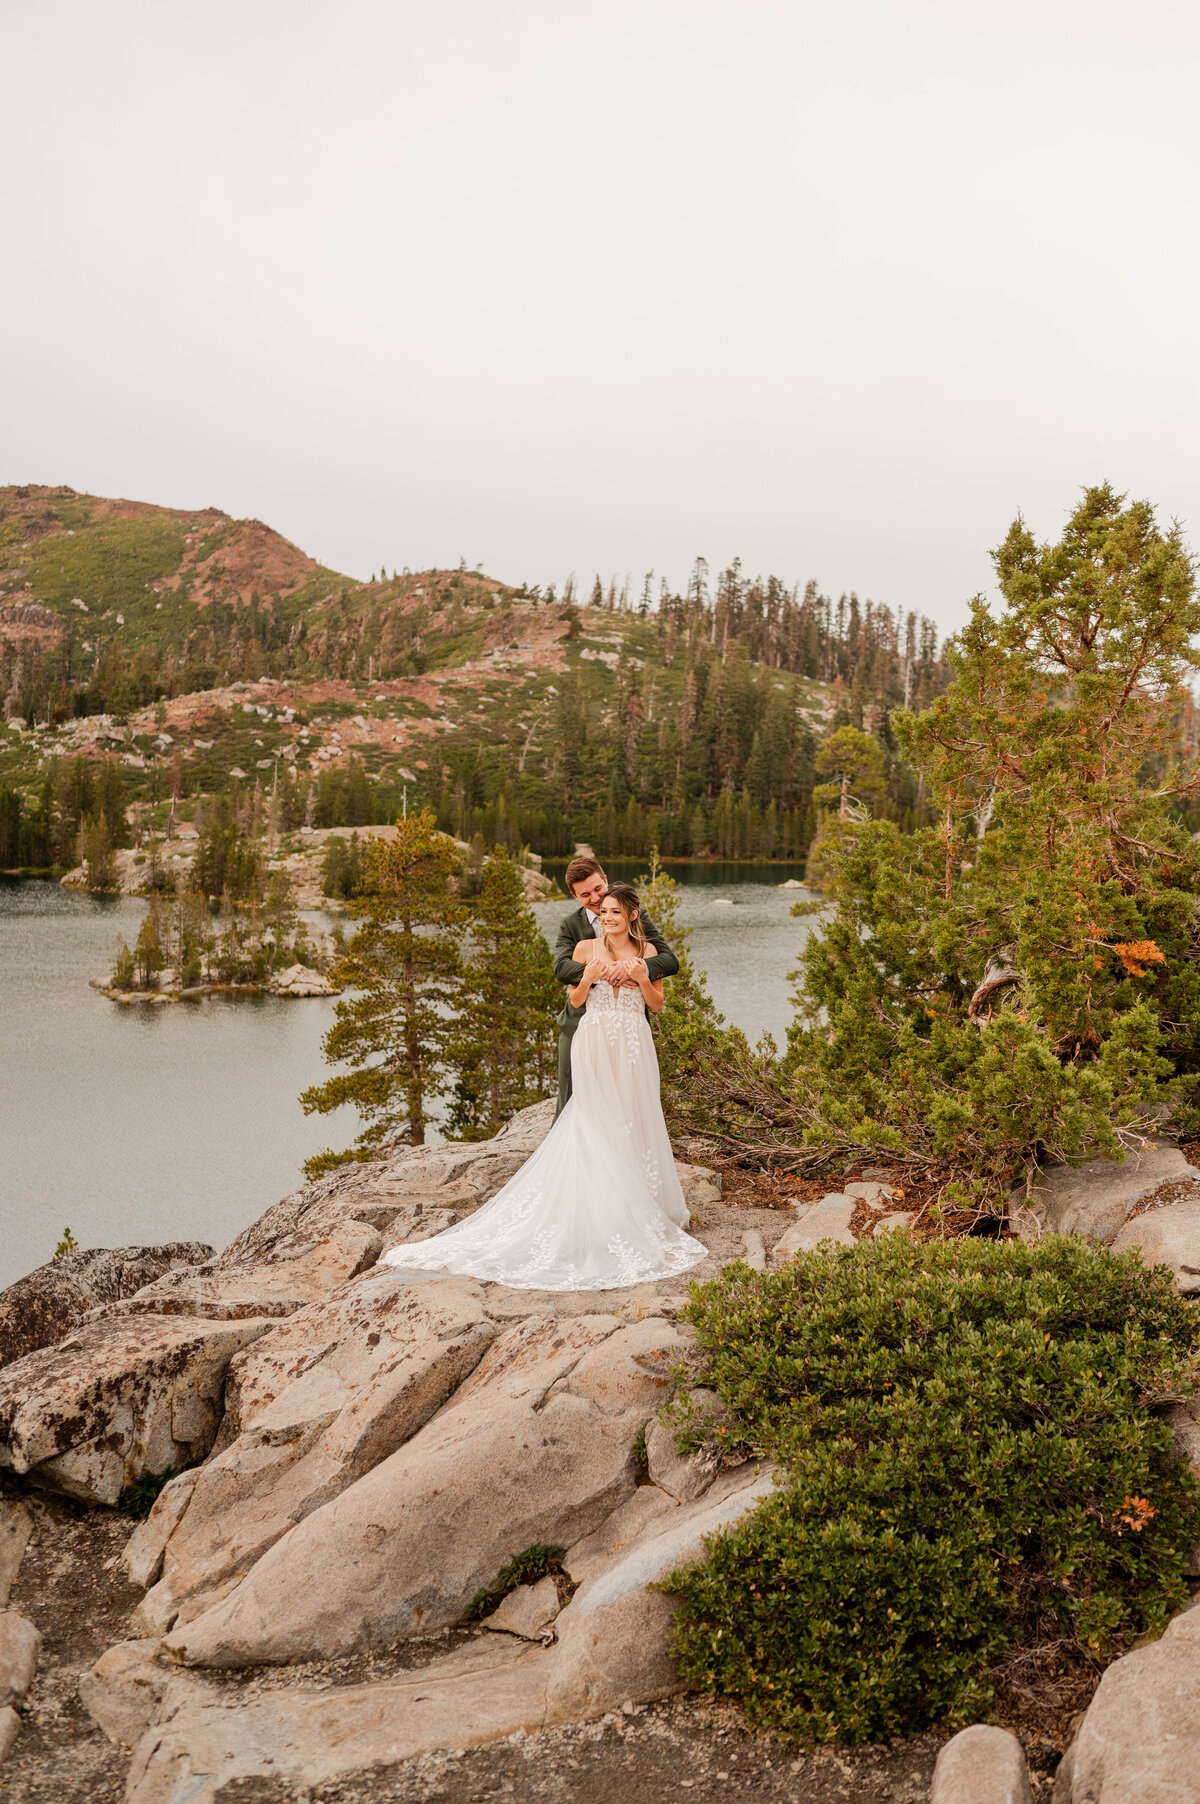 Lake tahoe elopement photographer, Lake Tahoe wedding photographer, wedding photography in Lake Tahoe, Elopement photographer Lake Tahoe